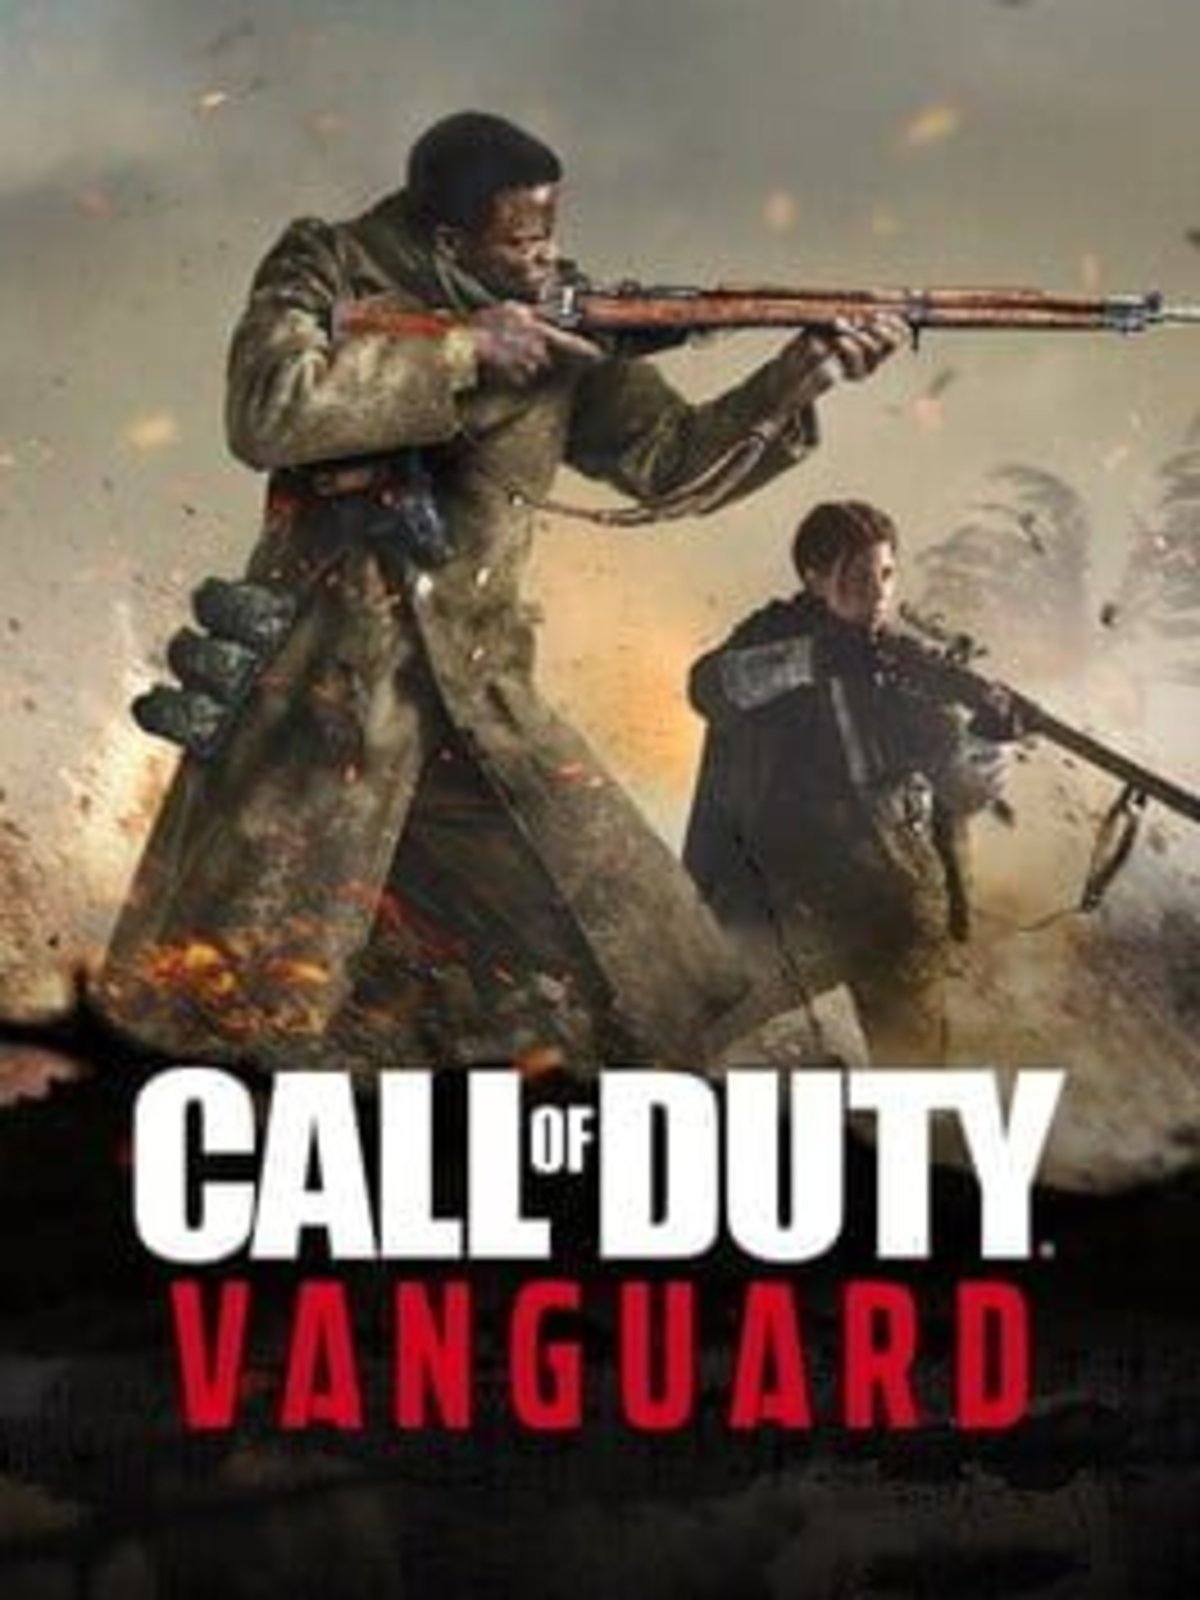 Vanguard expands until September 22